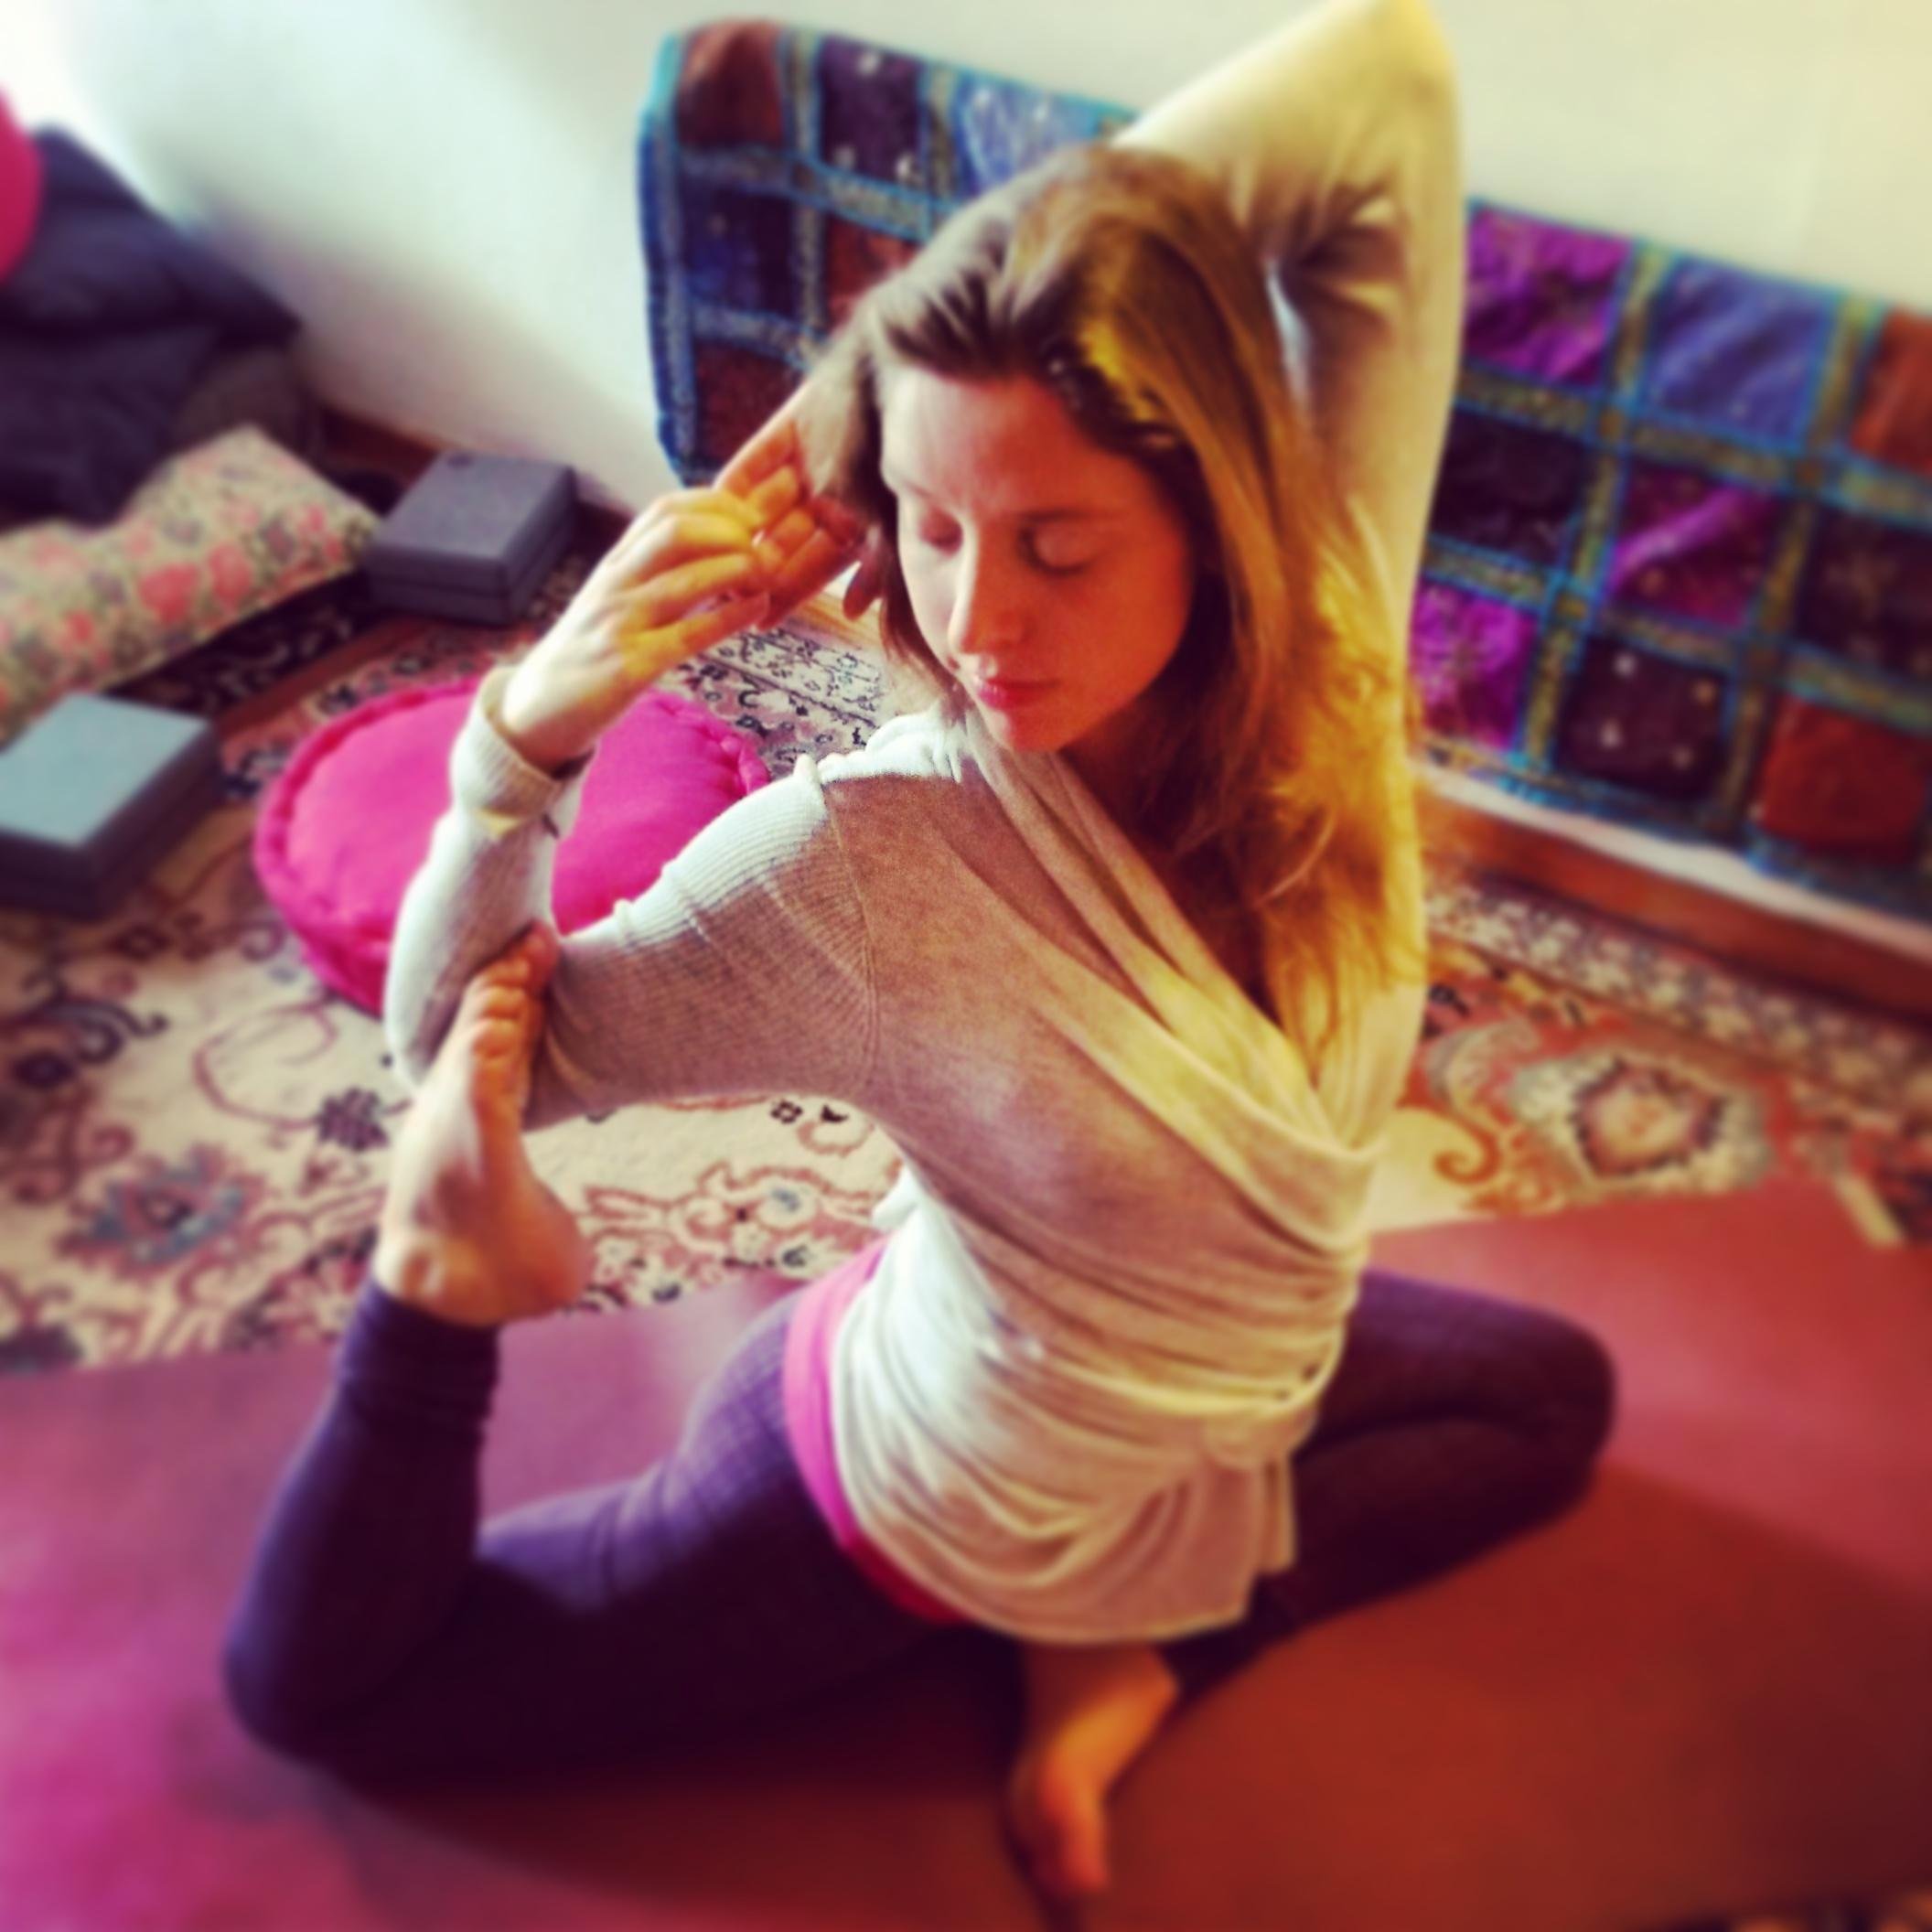 Du Québec à la France, Stéphanie Gagné partage sa passion pour le yoga à travers son enseignement: Hatha, Vinyasa, Yoga thérapie et SUP YOGA!